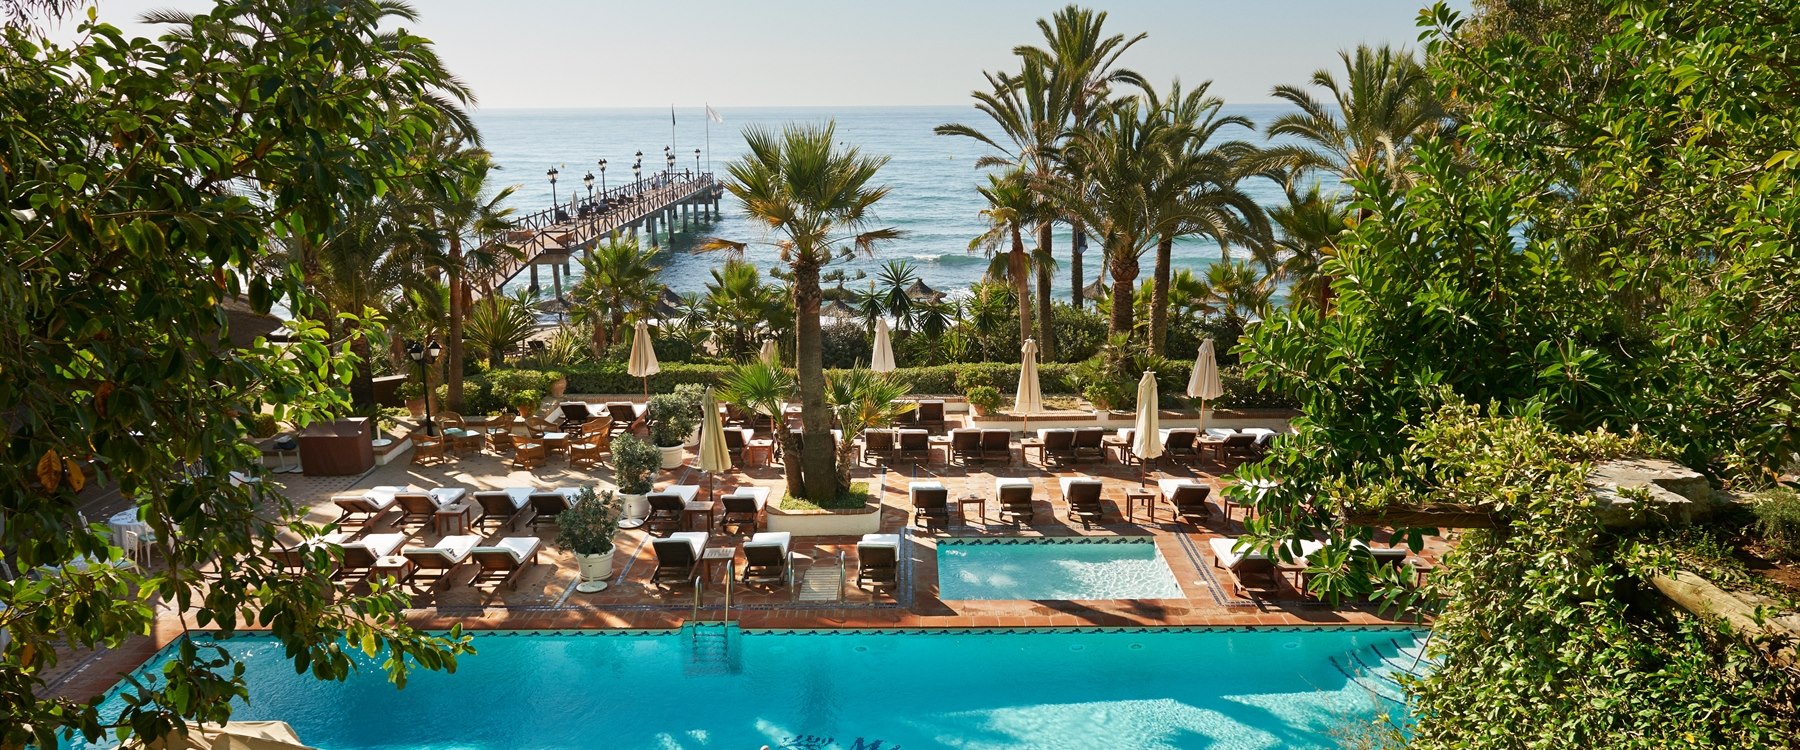 Marbella Club Hotel, Golf Resort & Spa 1